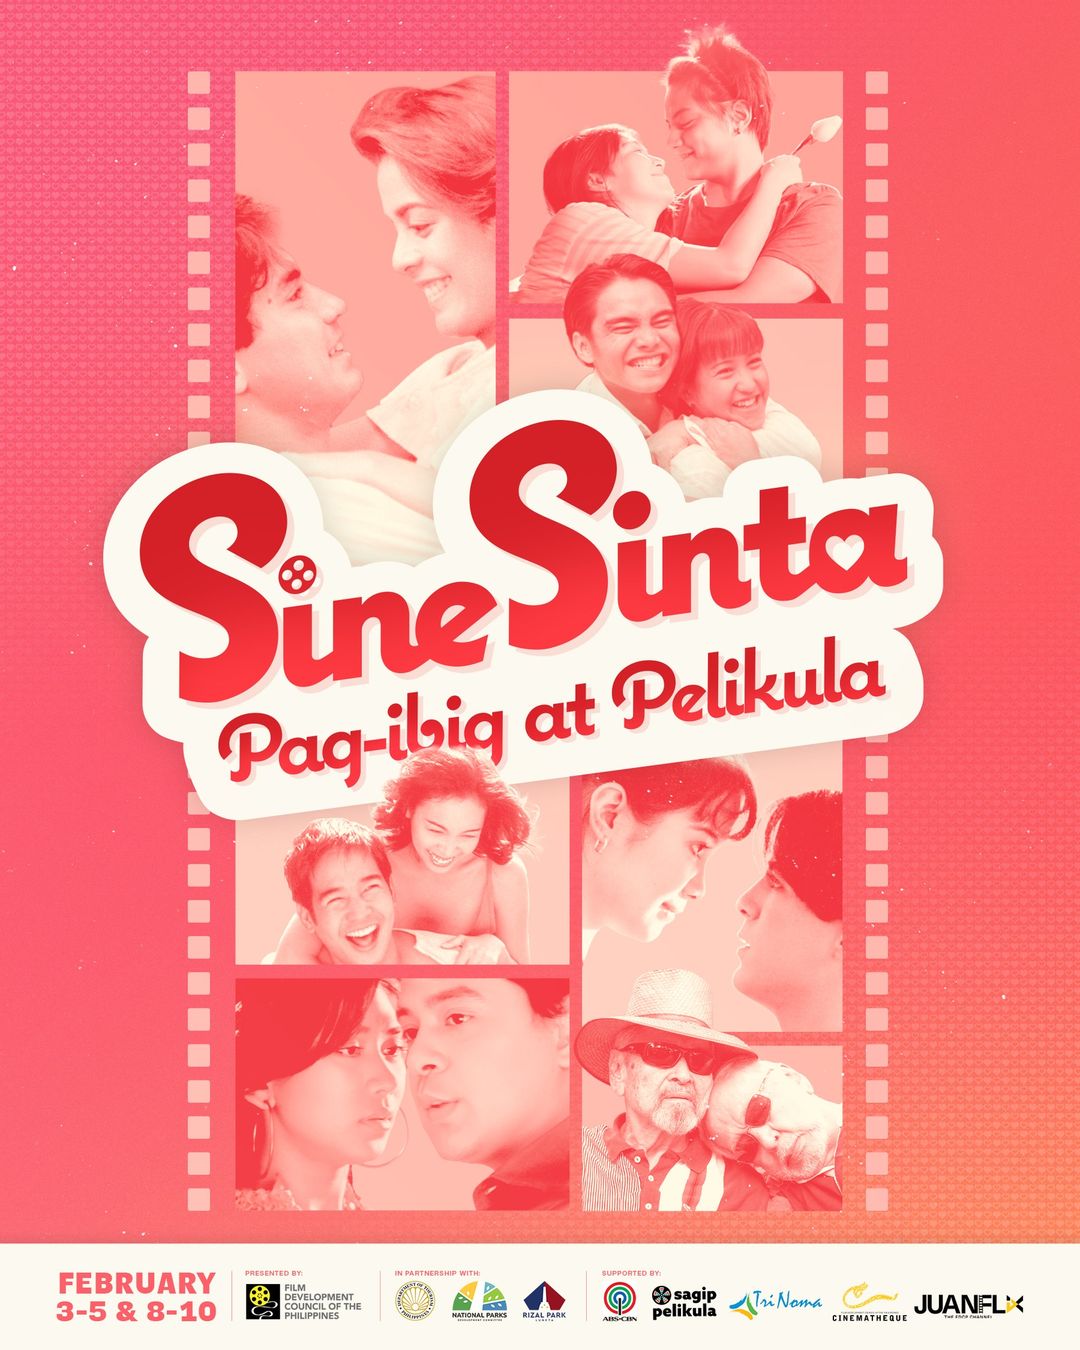 Sine Sinta: Pag-ibig at Pelikula poster